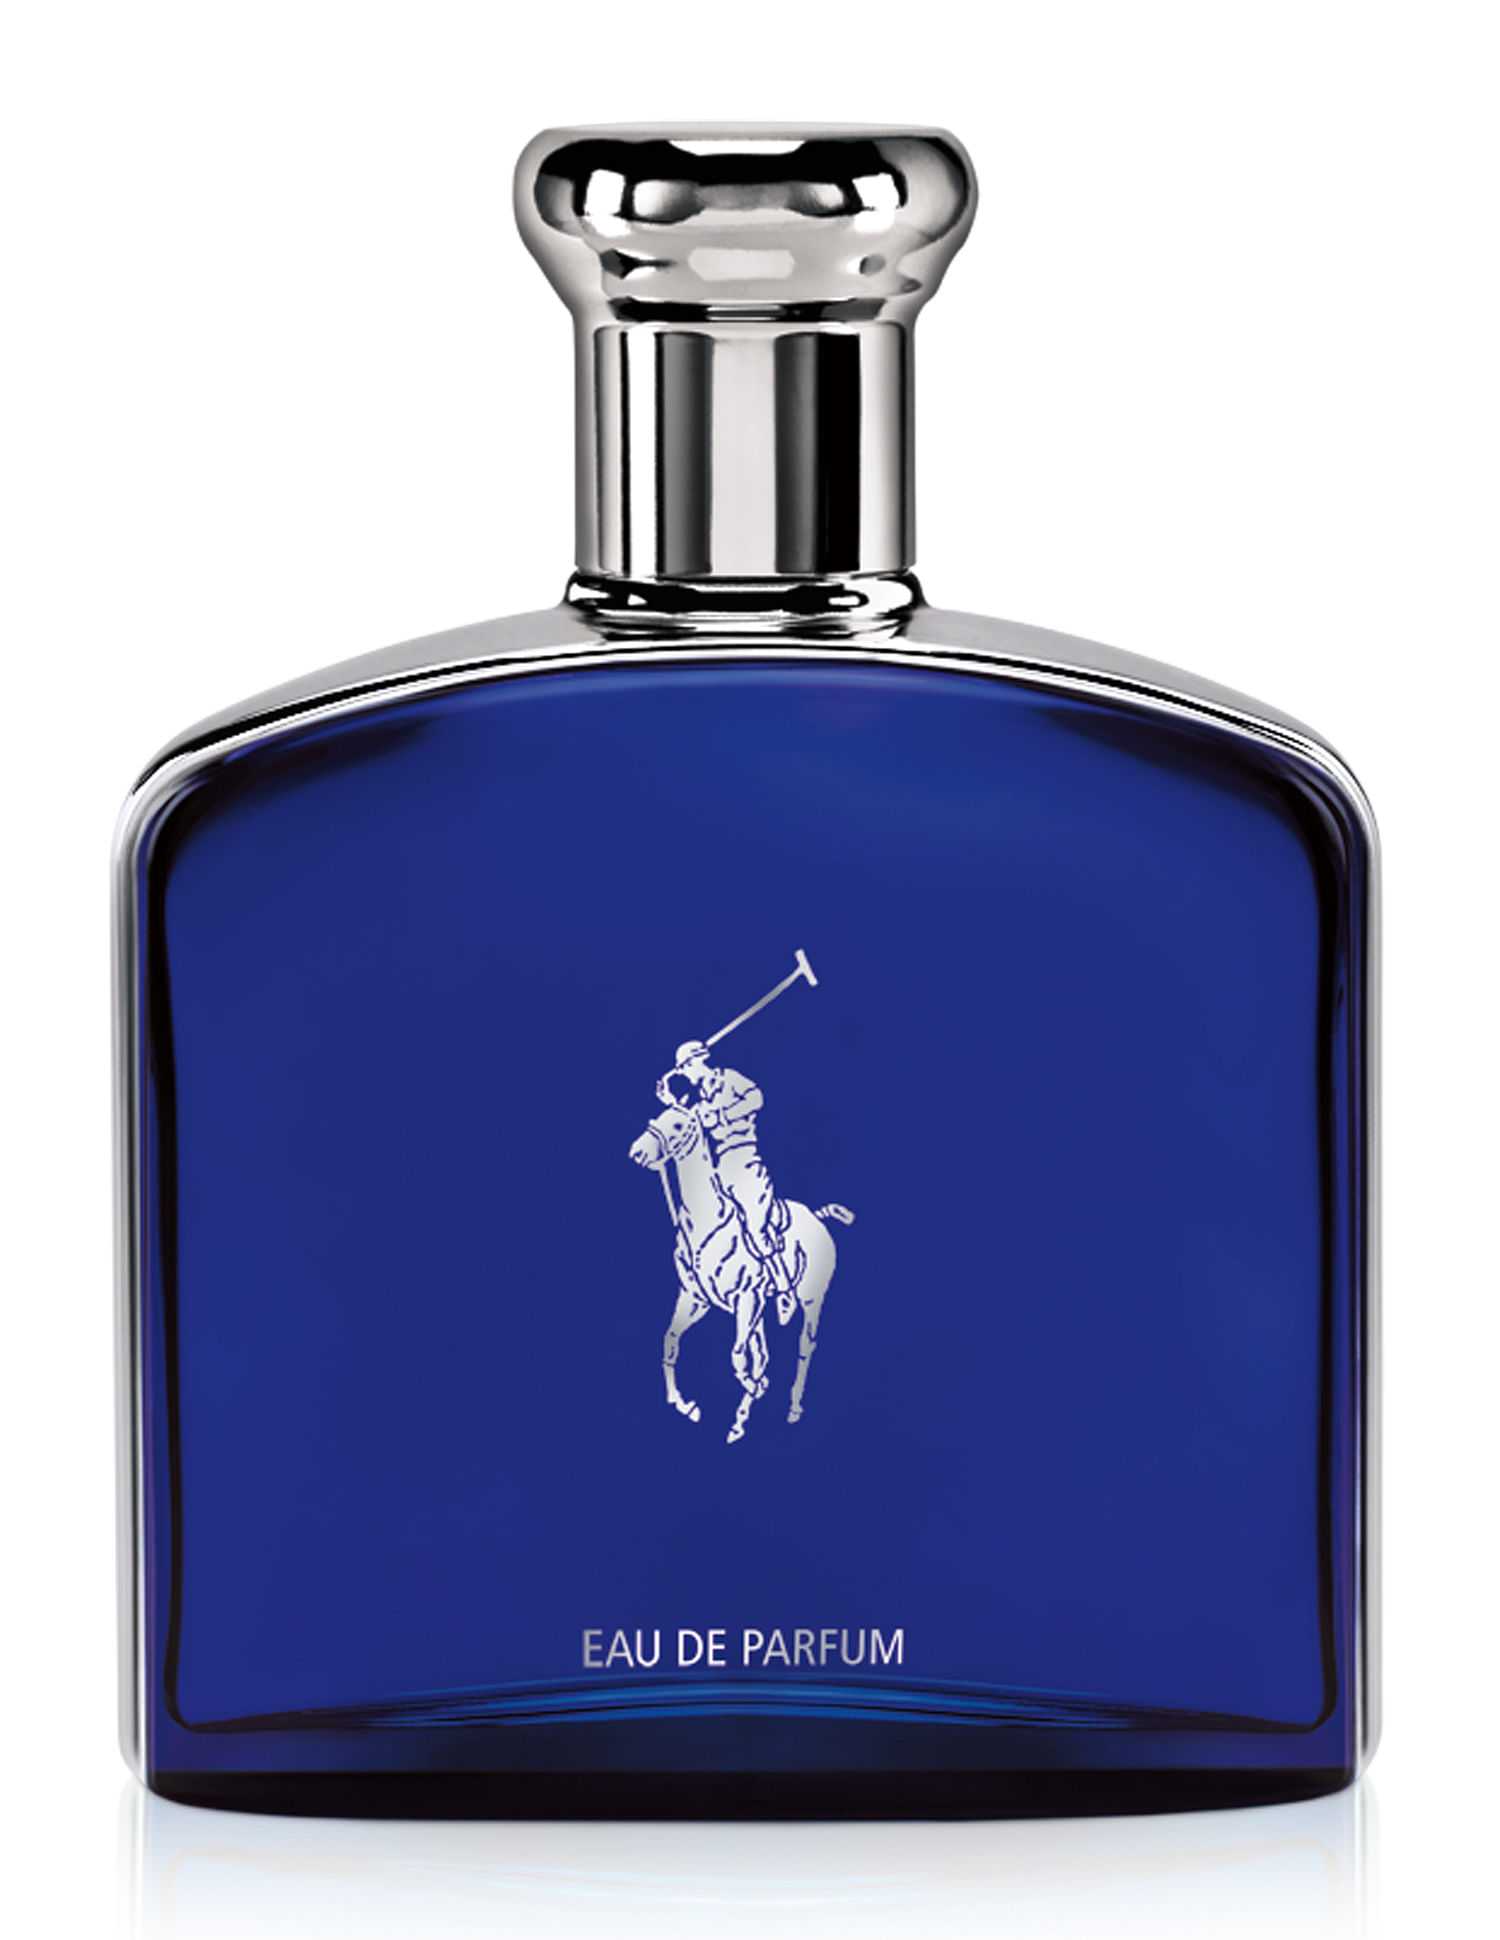 Buy RALPH LAUREN Polo Blue Eau De Parfum 